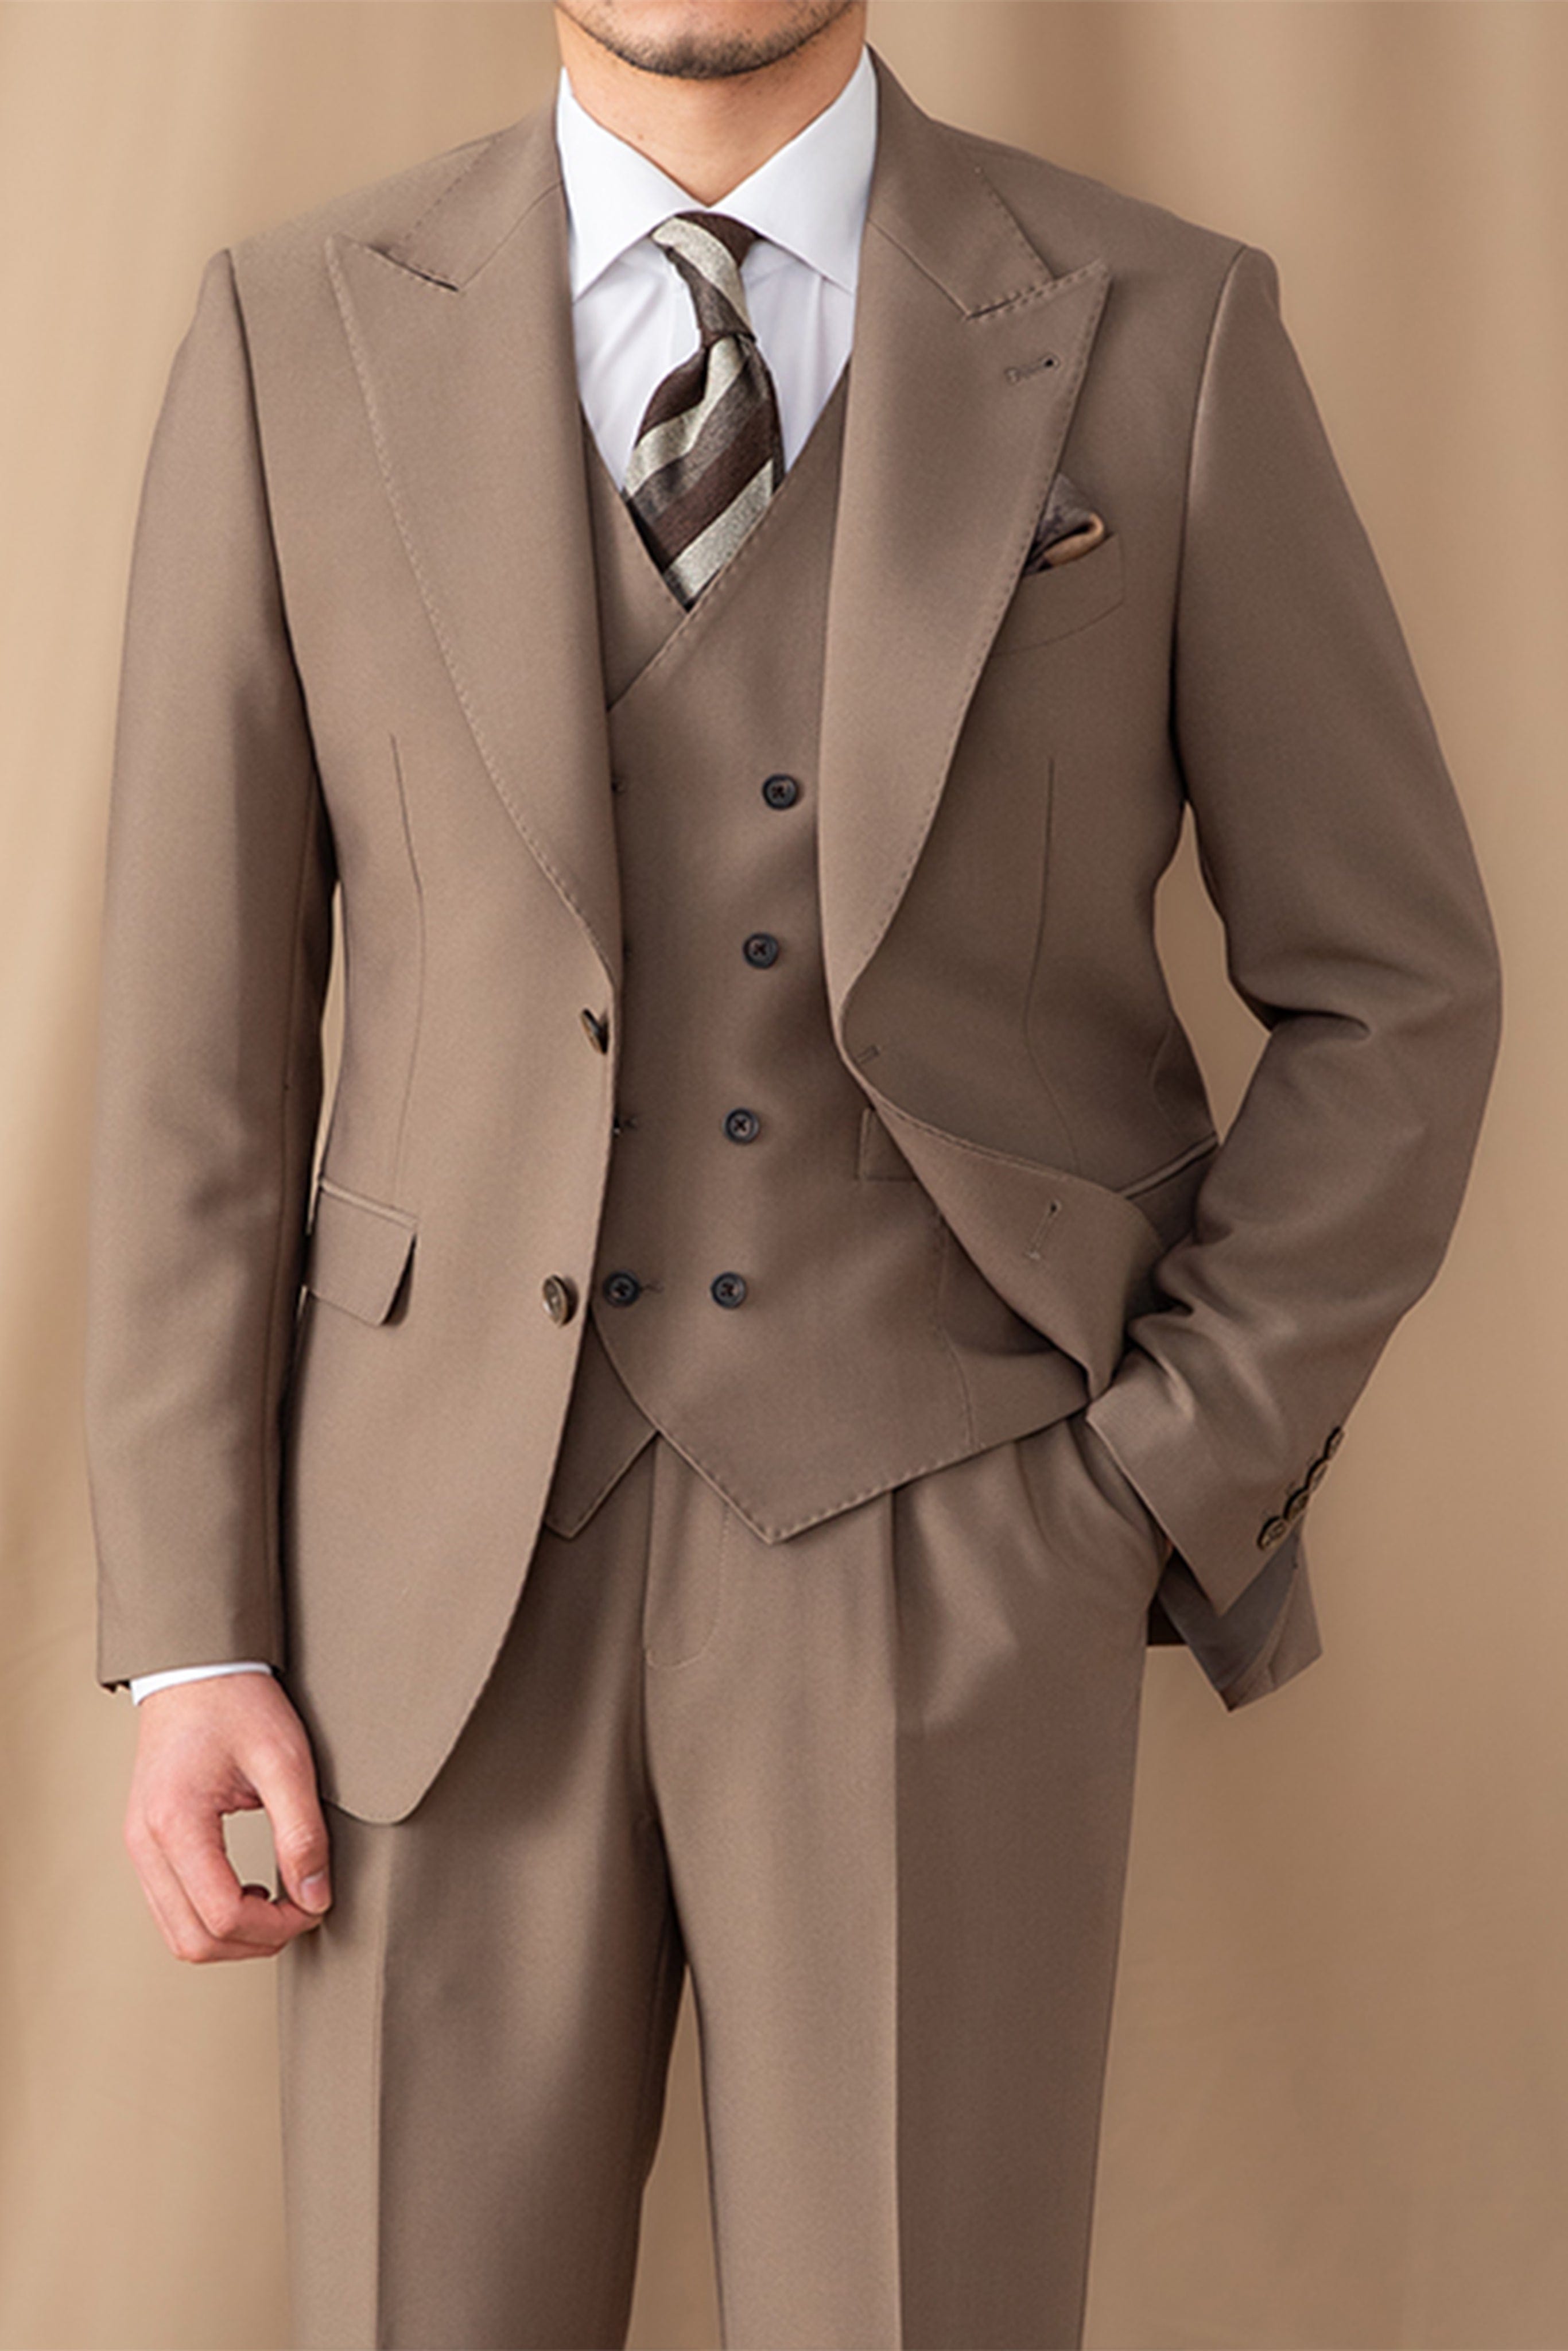 aesido 3 Piece Business Casual Peak Lapel Men's Suit (Blazer+Vest+Pants）